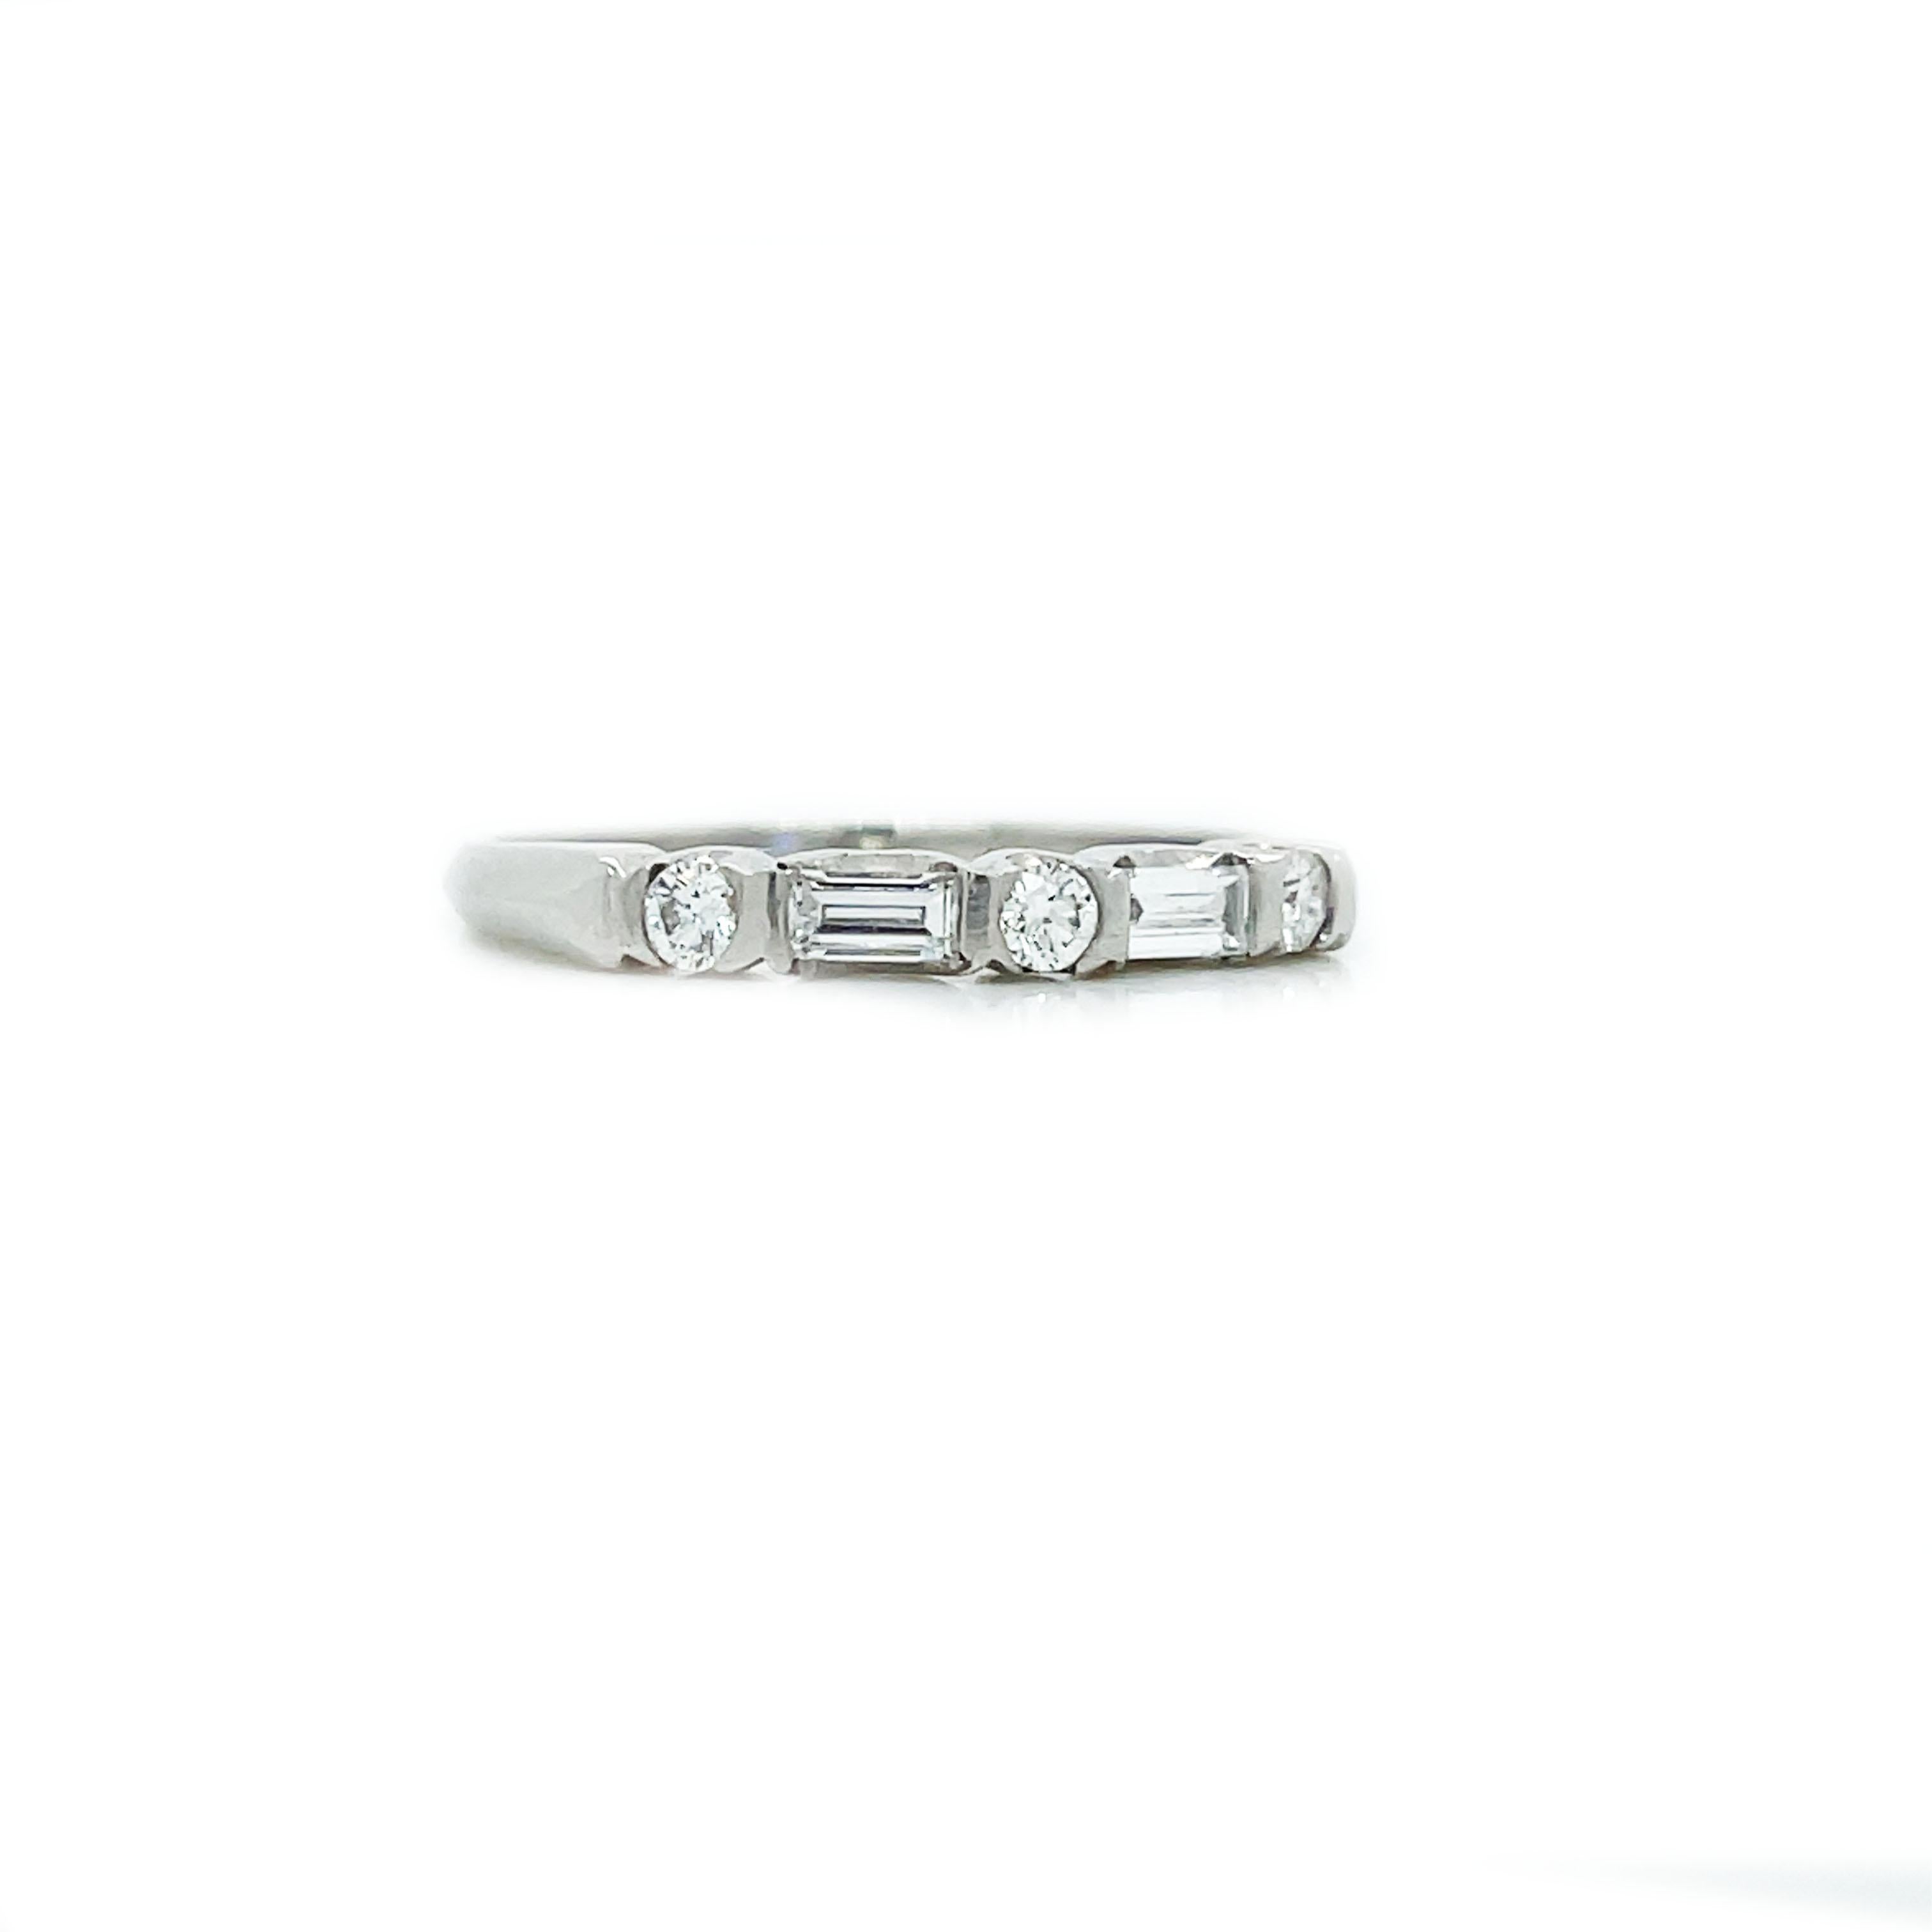 Il s'agit d'un élégant bracelet en platine Art déco de 1925 qui présente une combinaison étincelante de diamants ronds et baguettes ! Cette bague classique en platine est élégante et raffinée, alternativement étincelante et brillante avec des